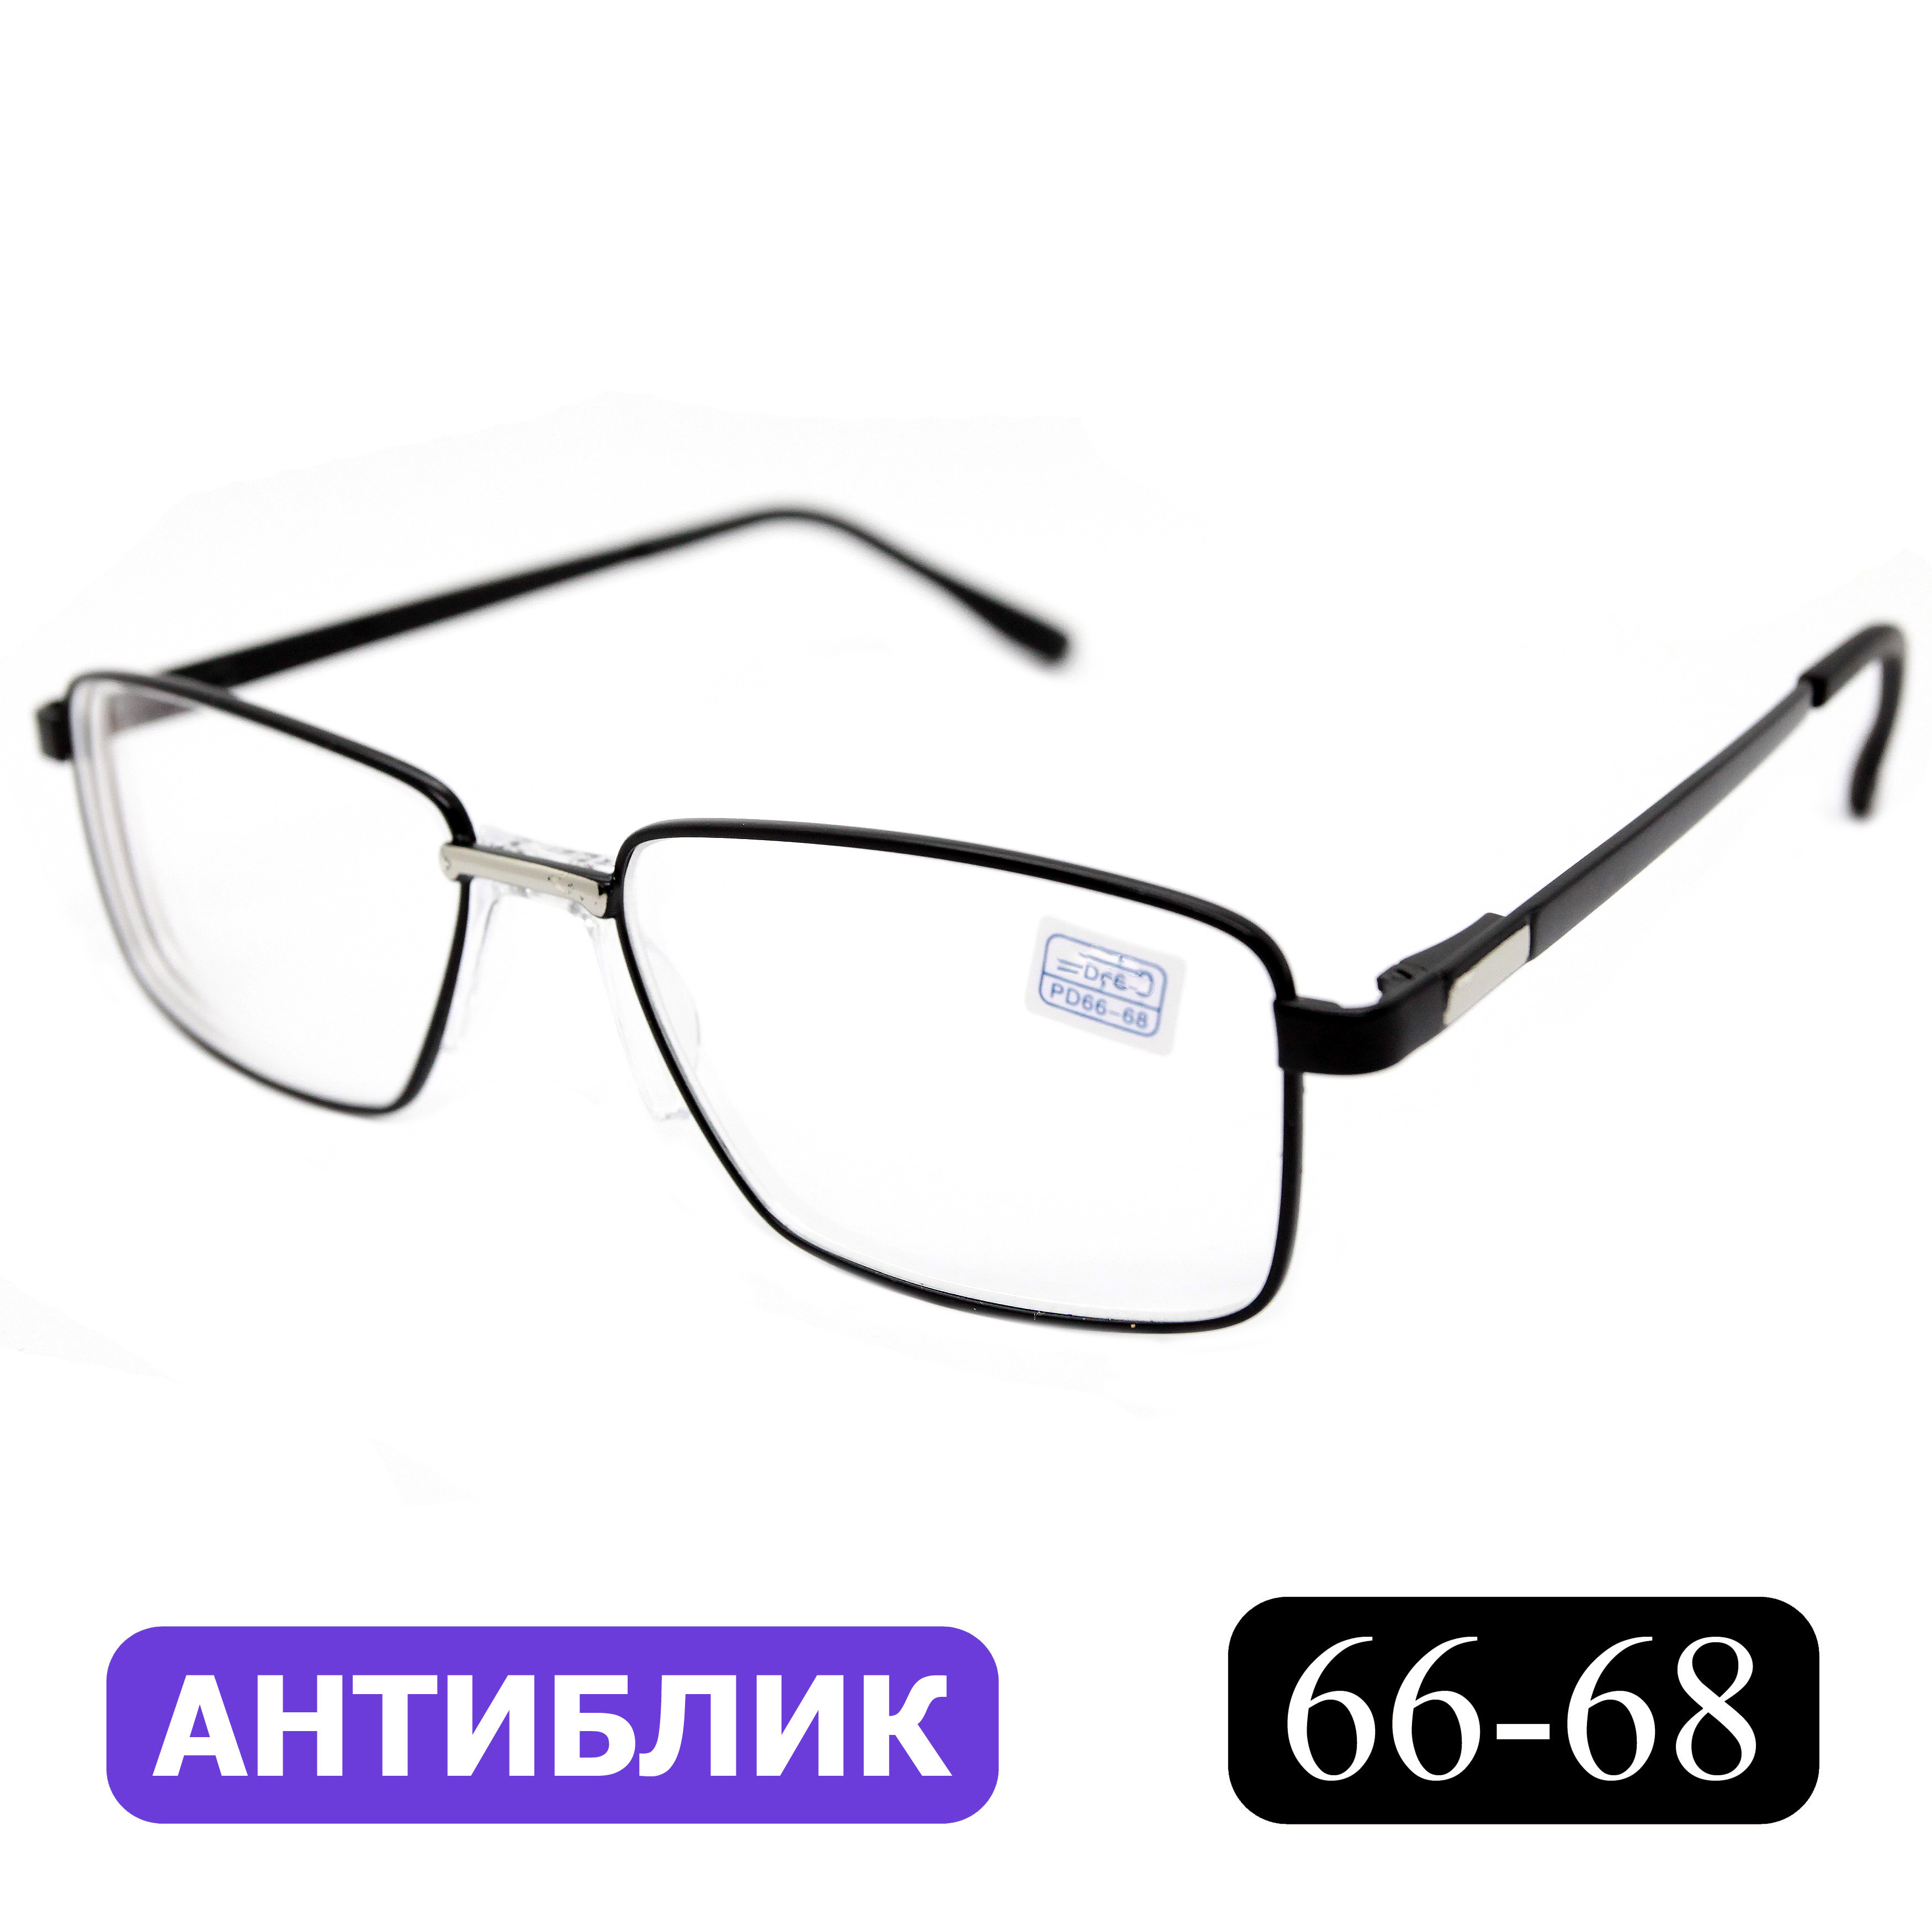 Готовые очки Favarit 7705 +4,00, без футляра, с антибликом, черный, РЦ 66-68